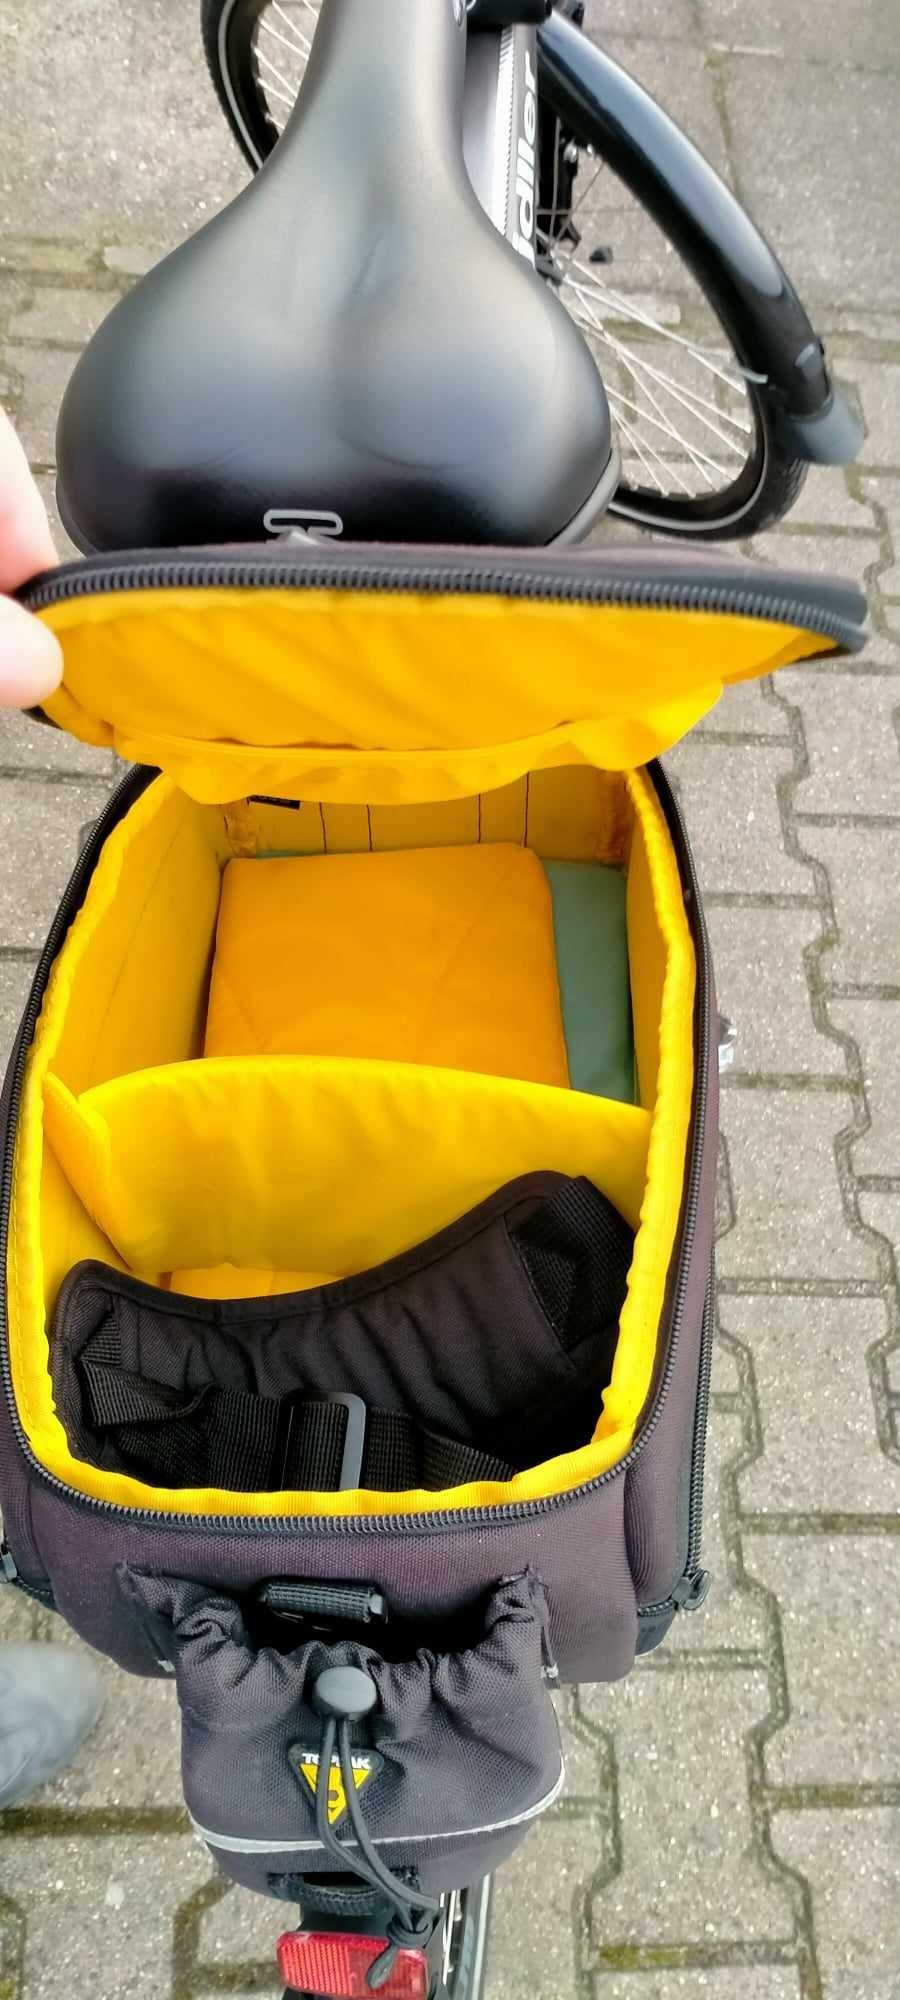 Topeam torba na rower Trunk Bag EX